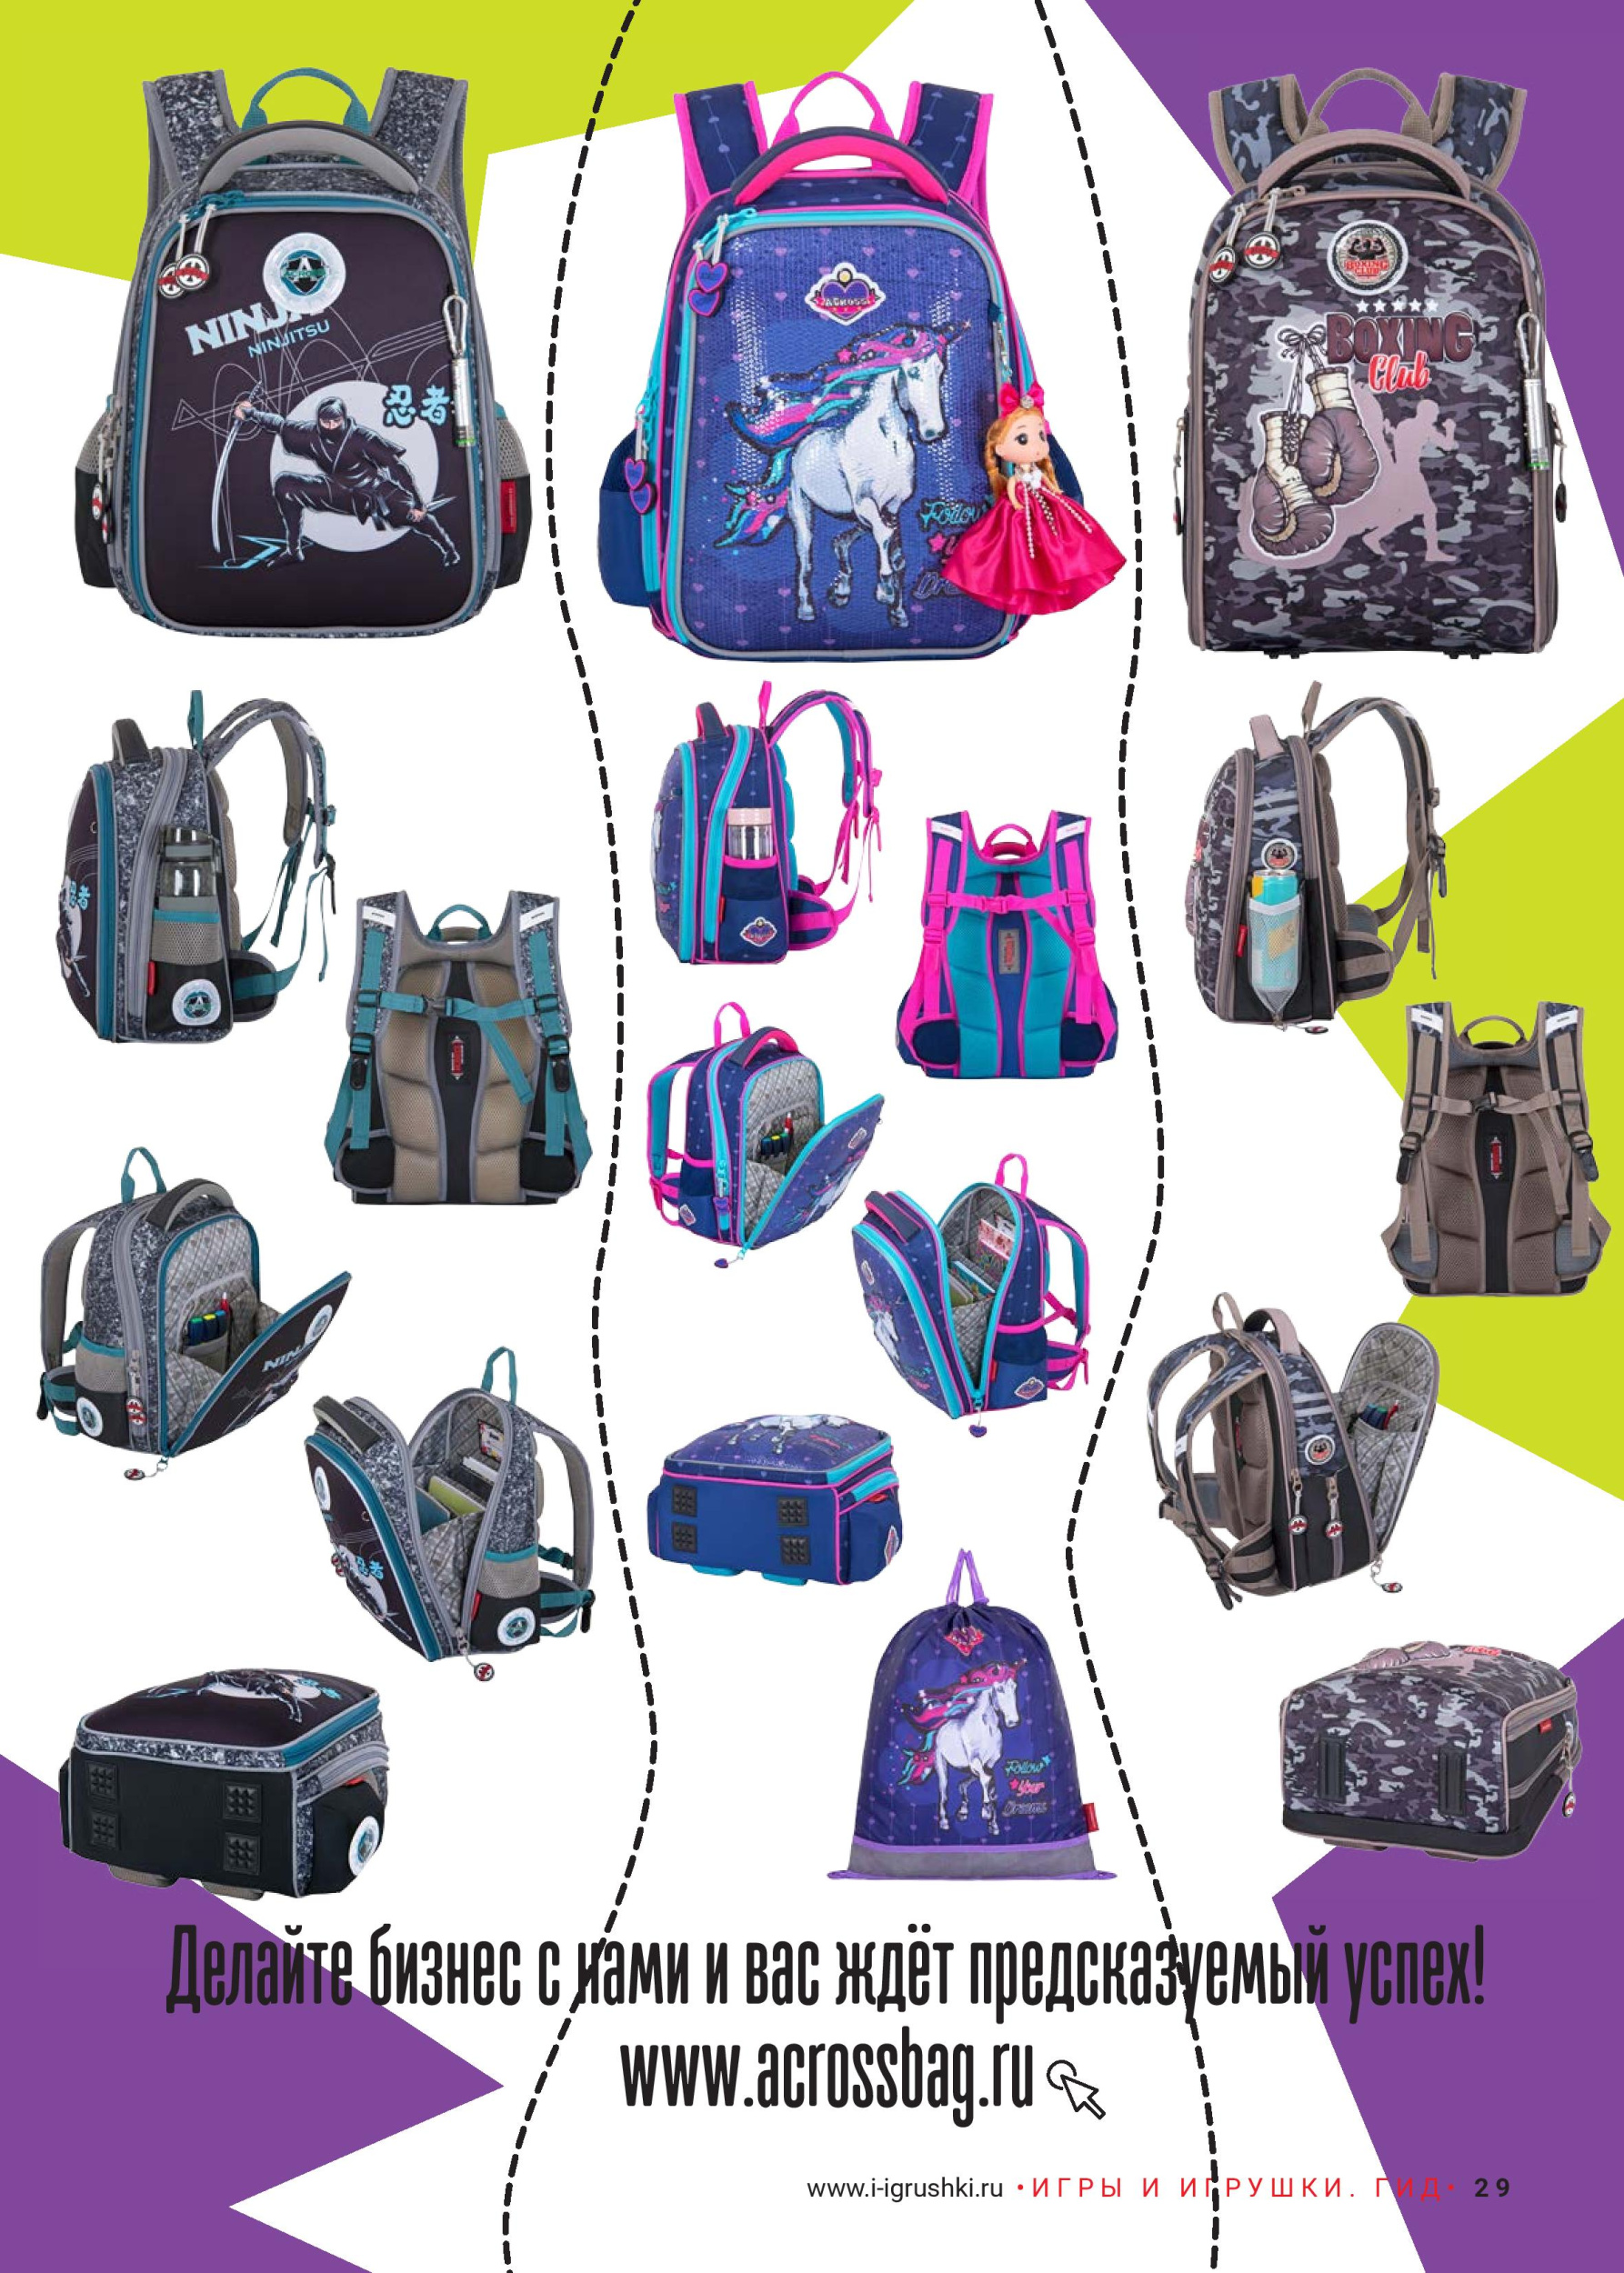 Школьные ранцы и рюкзаки ACROSS - это стиль, оригинальность дизайна, высокое качество, комфорт!